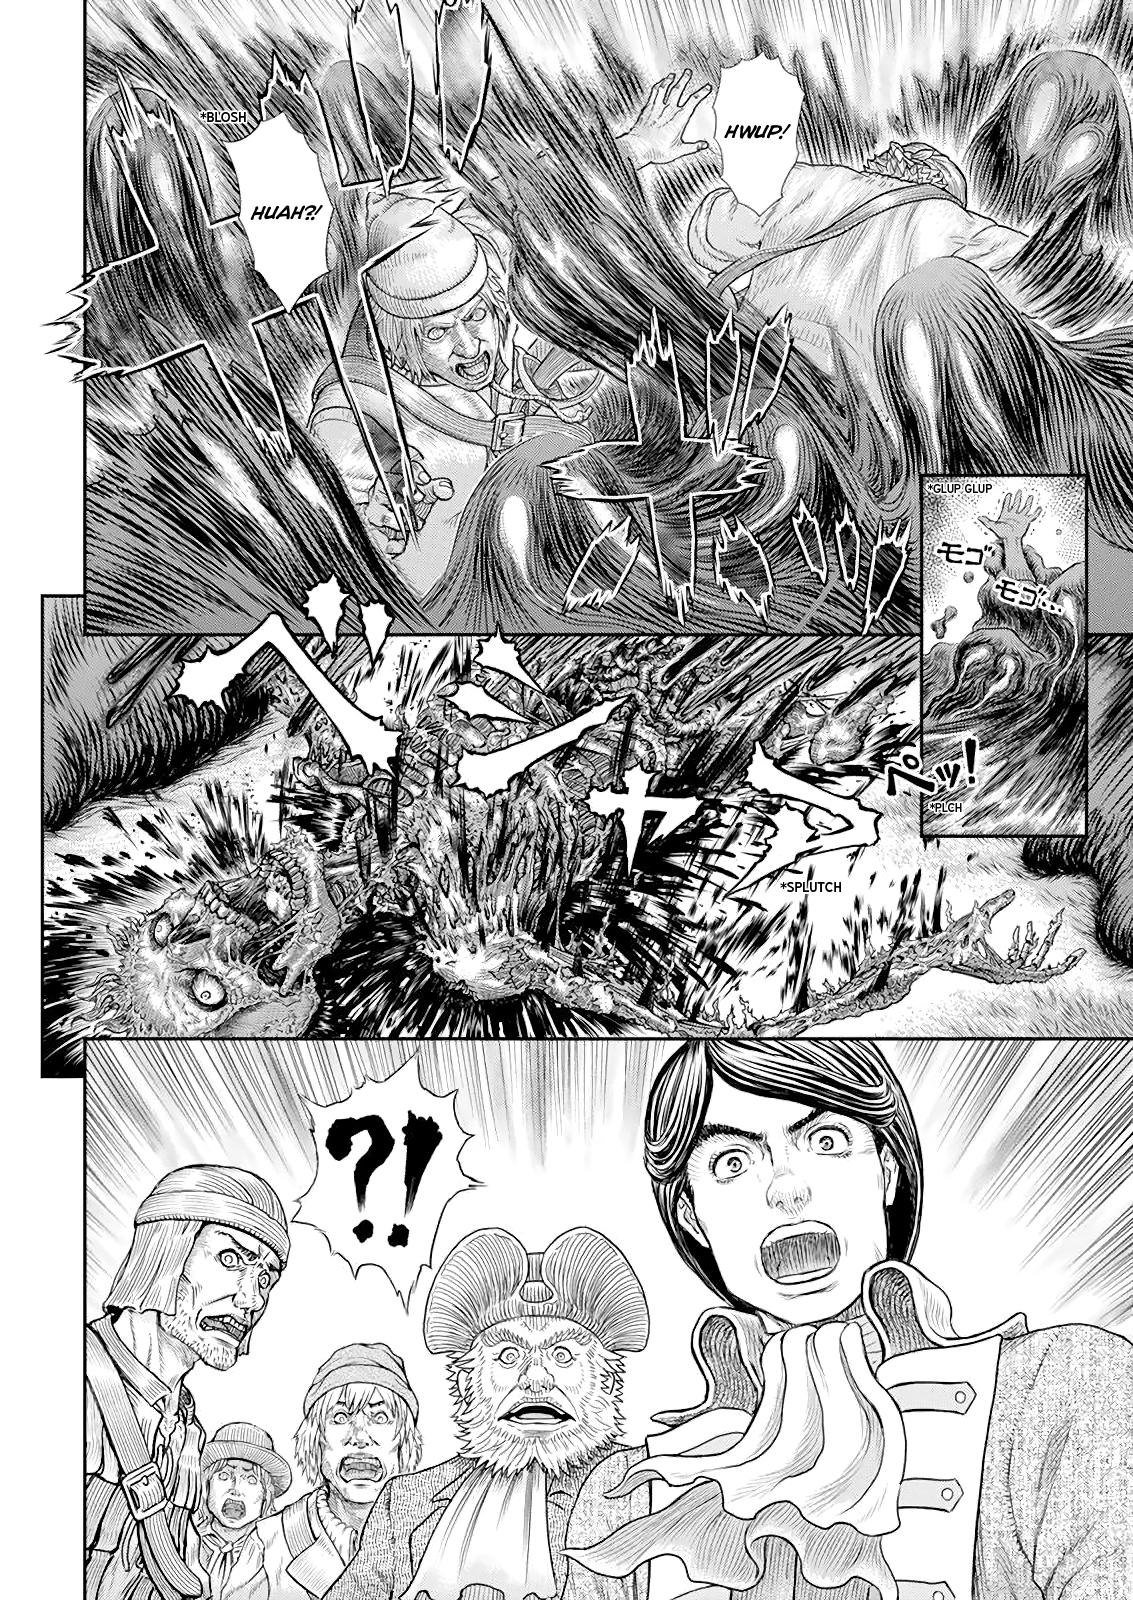 Berserk Manga Chapter 368 image 11